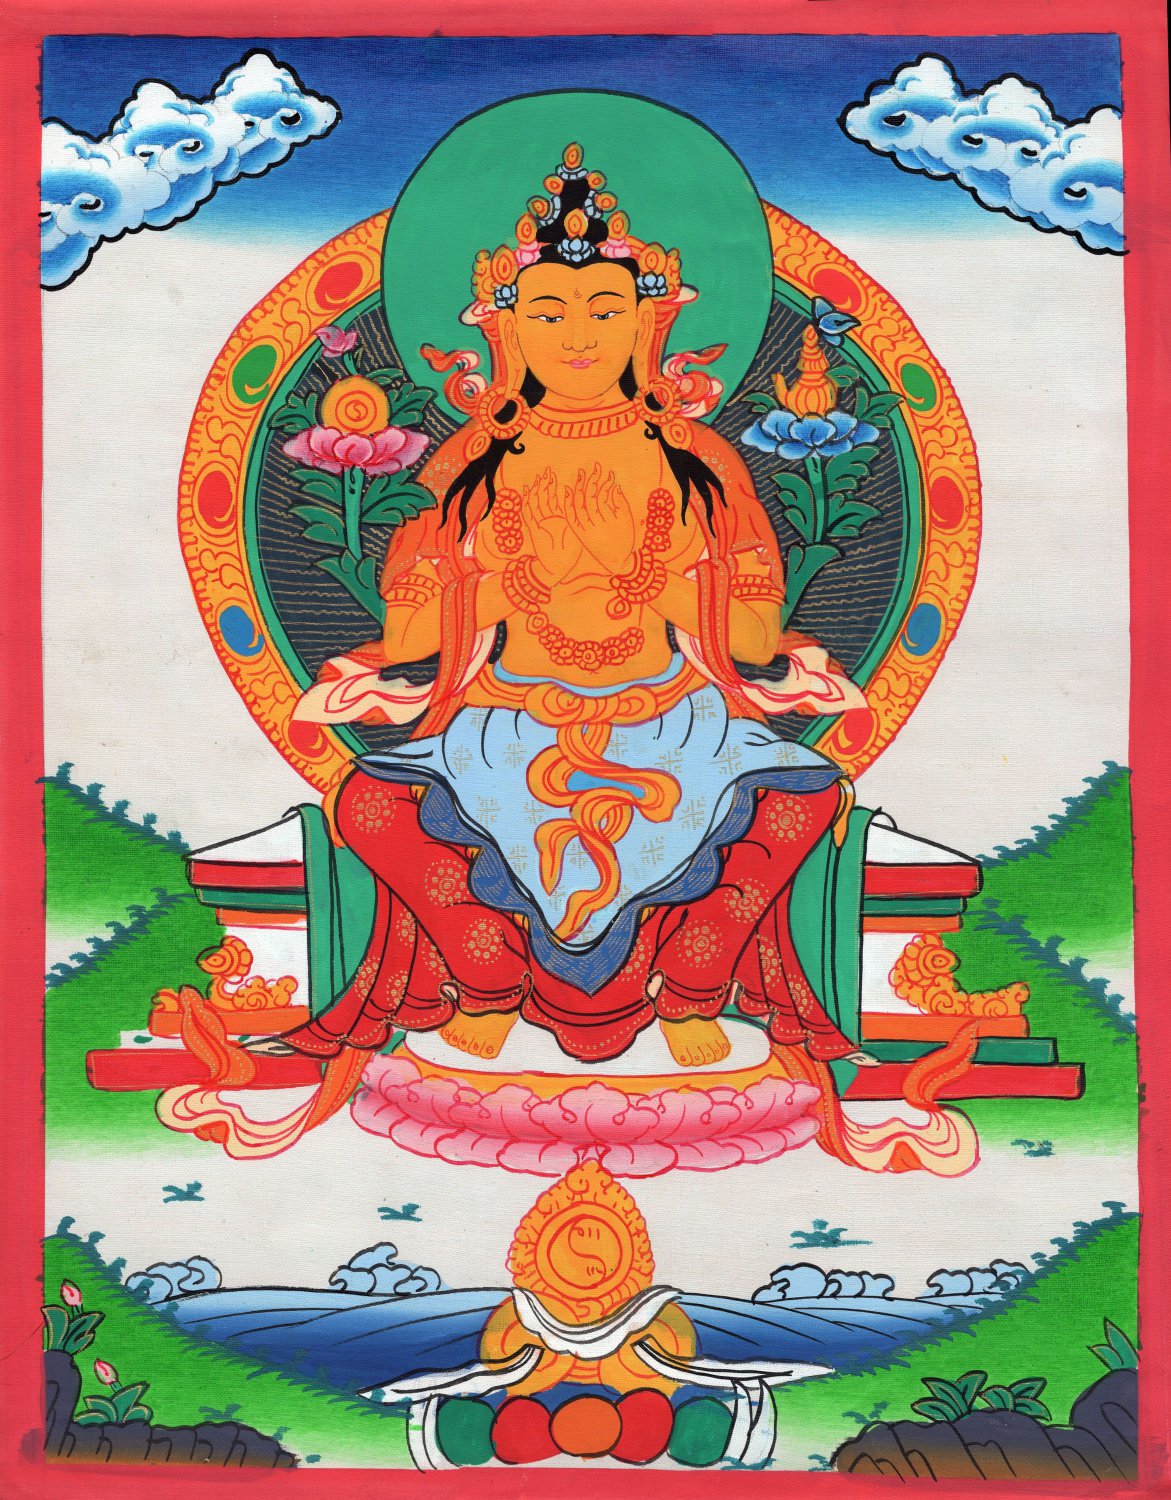 Maitreya Buddha Thangka Painting Handmade Buddhist Spiritual Ethnic Thanka Art